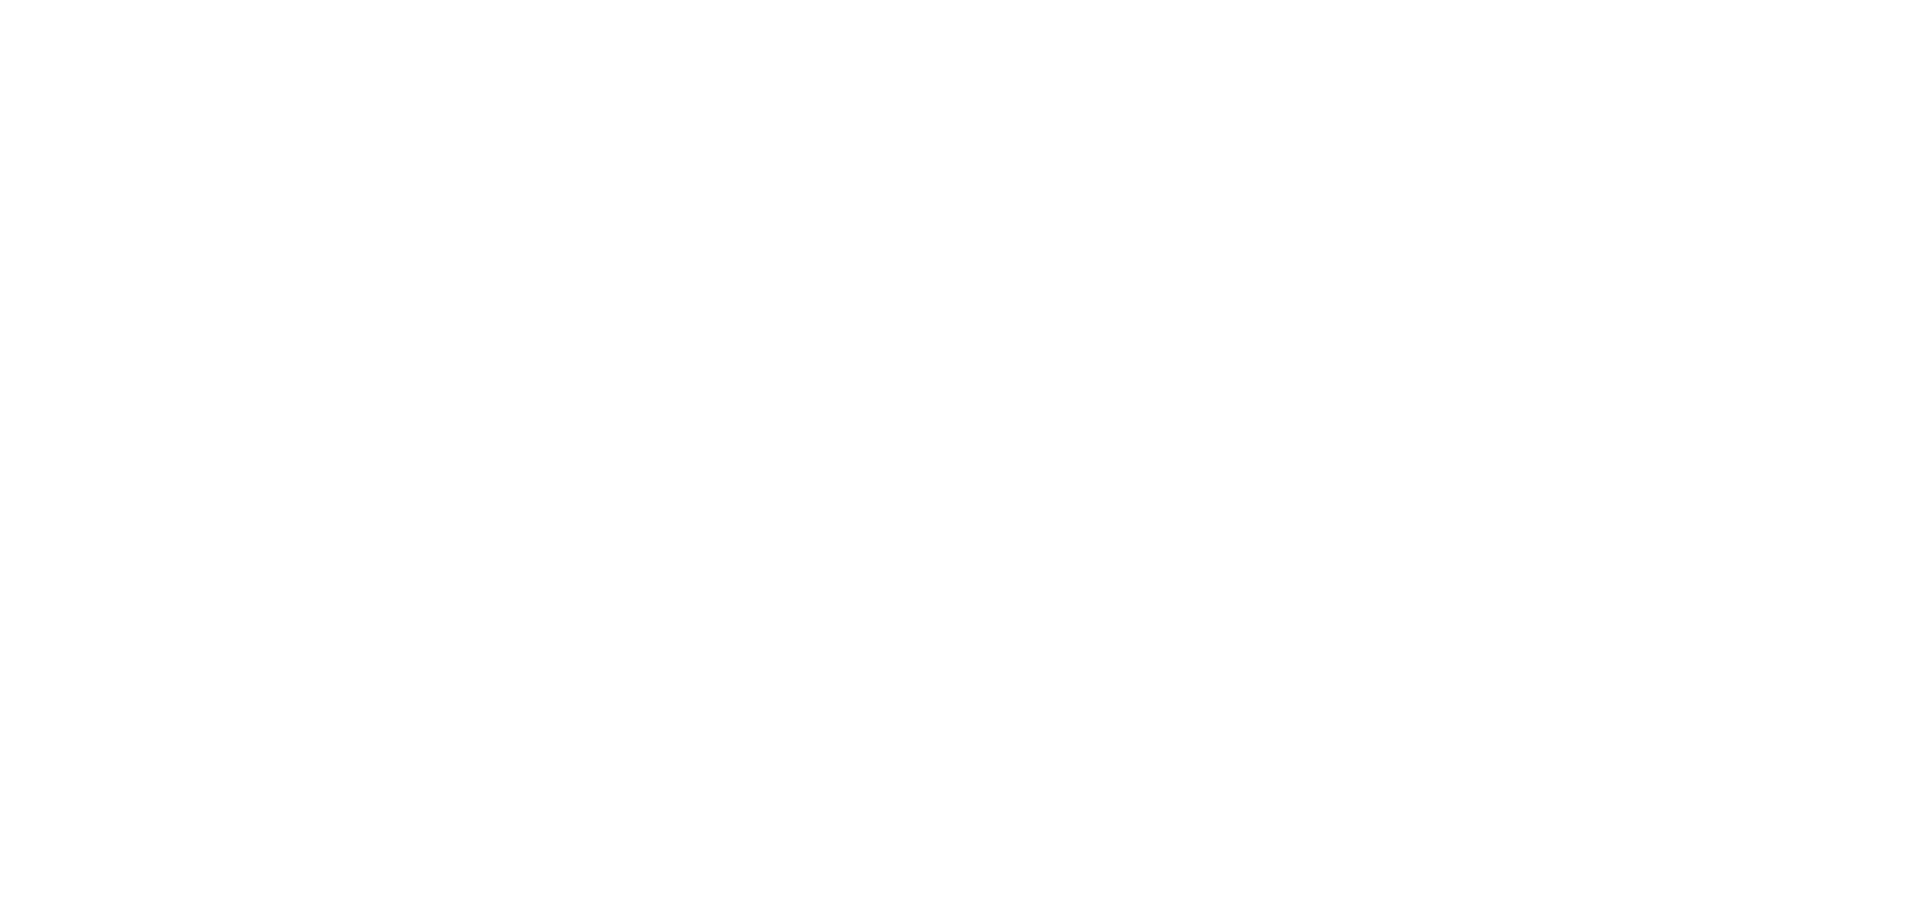 sisorsat logo